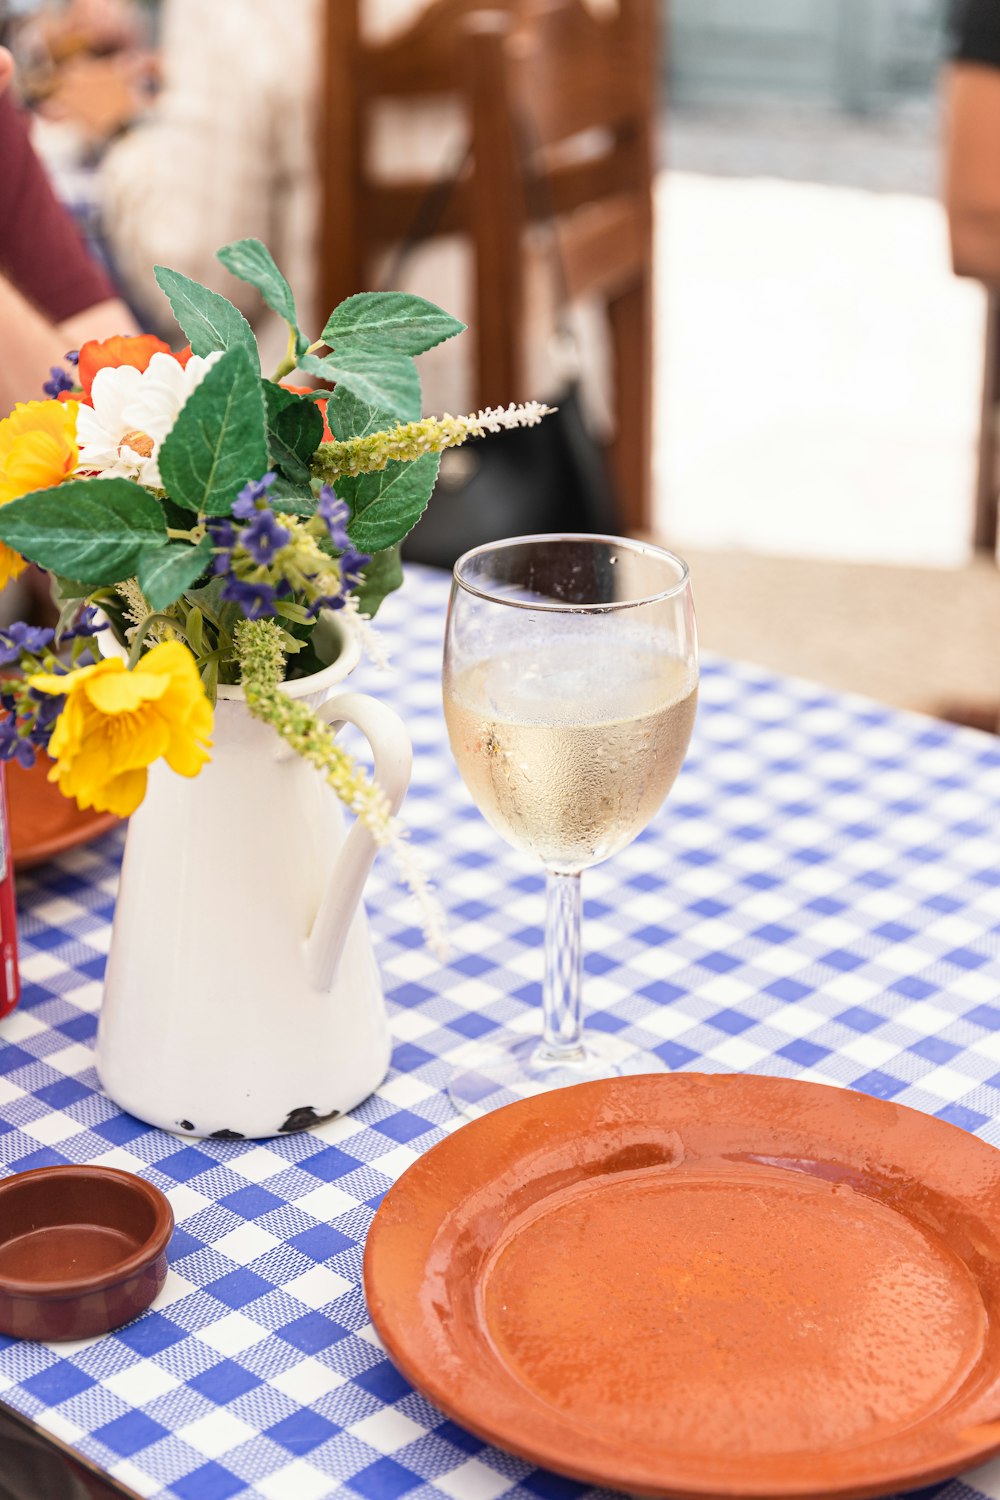 꽃병과 테이블 위의 와인 한 잔